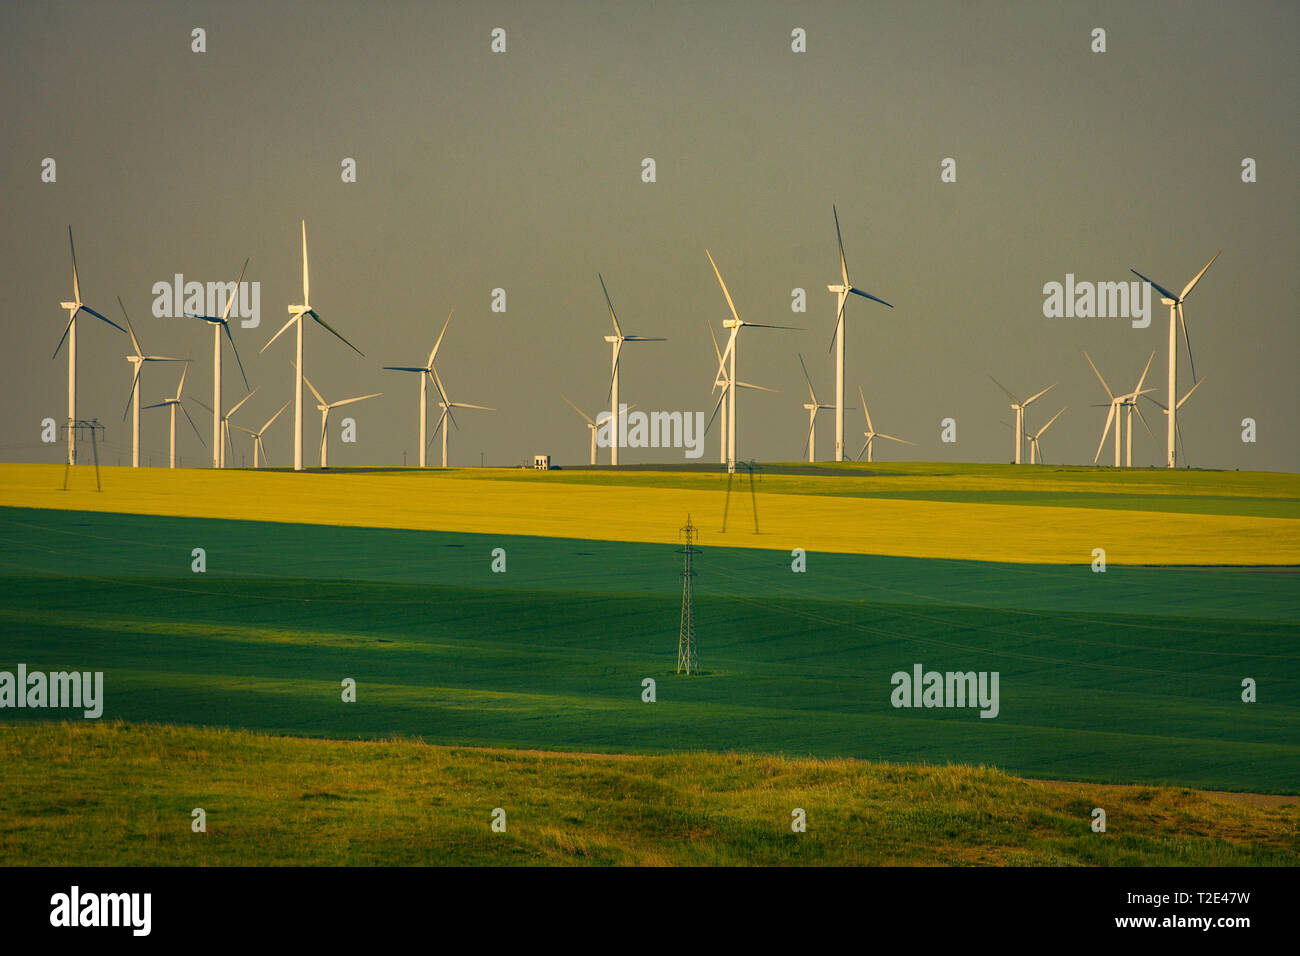 Äolische Windenergieanlagen verwendeten ökologischen grünen Strom Schuß in einem mit farbigen Weizen und canolas im Frühjahr in Rumänien zu produzieren Stockfoto